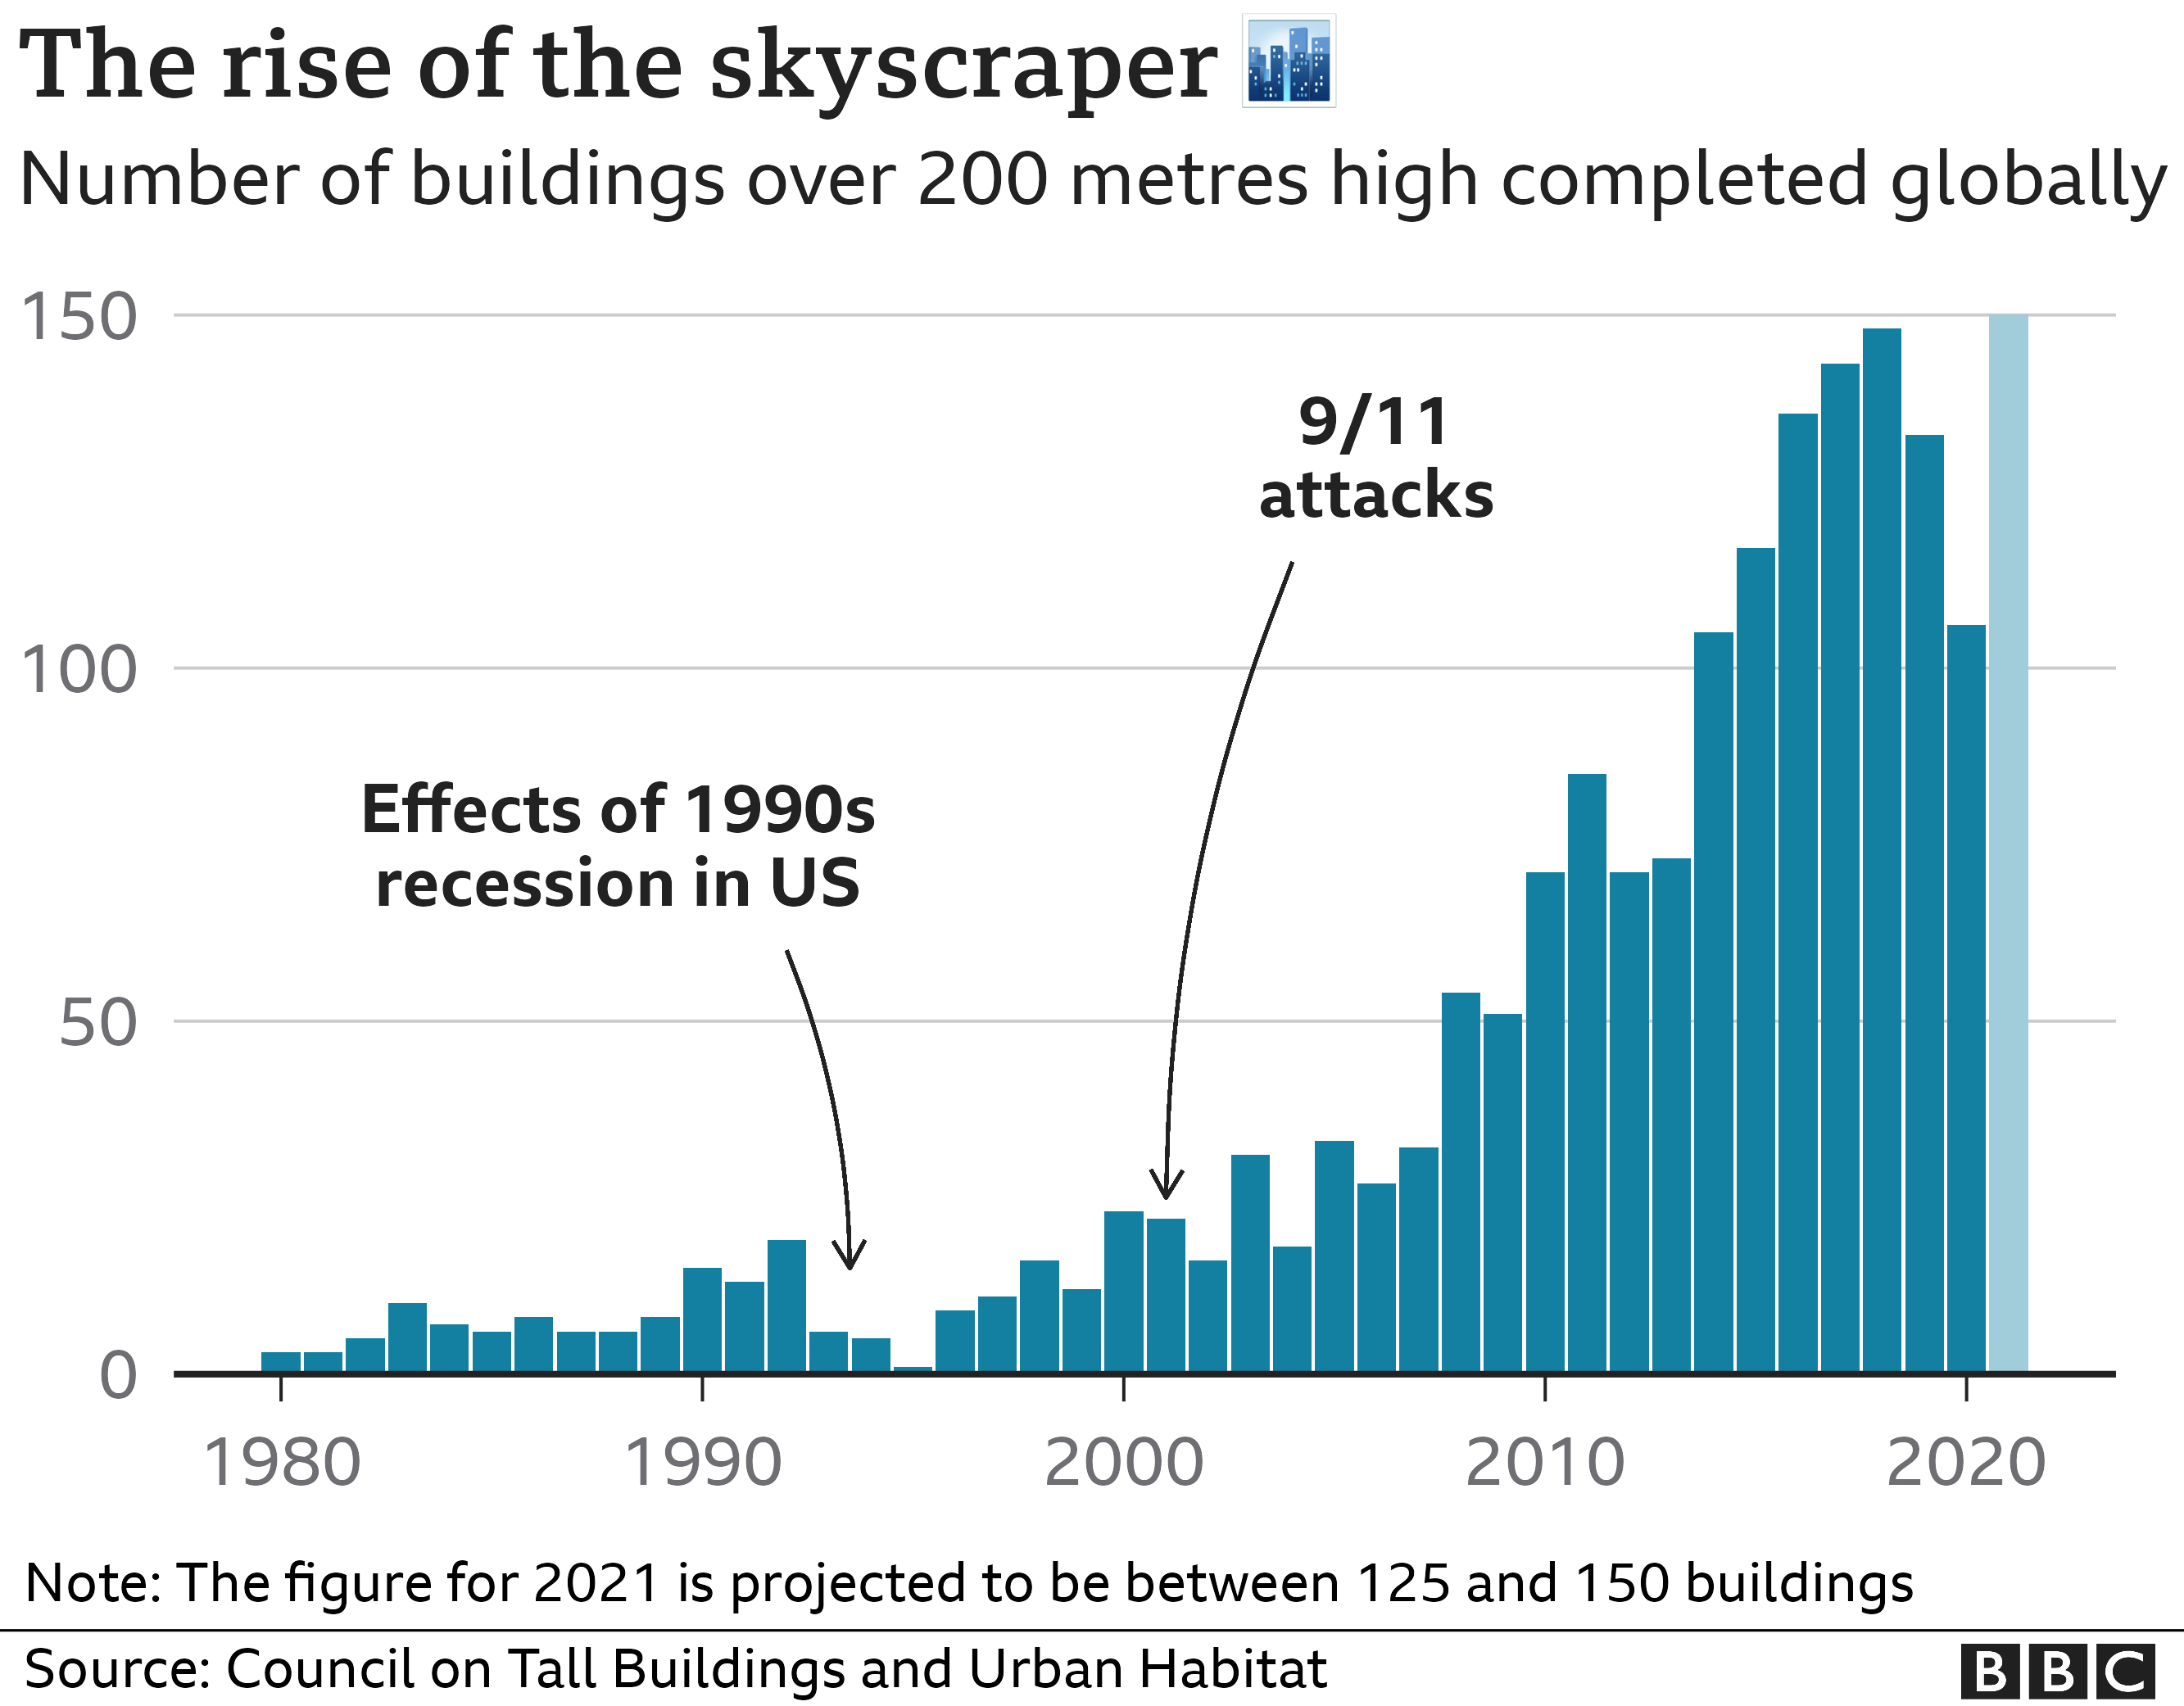 The rise of the skyscraper - BBC graphic